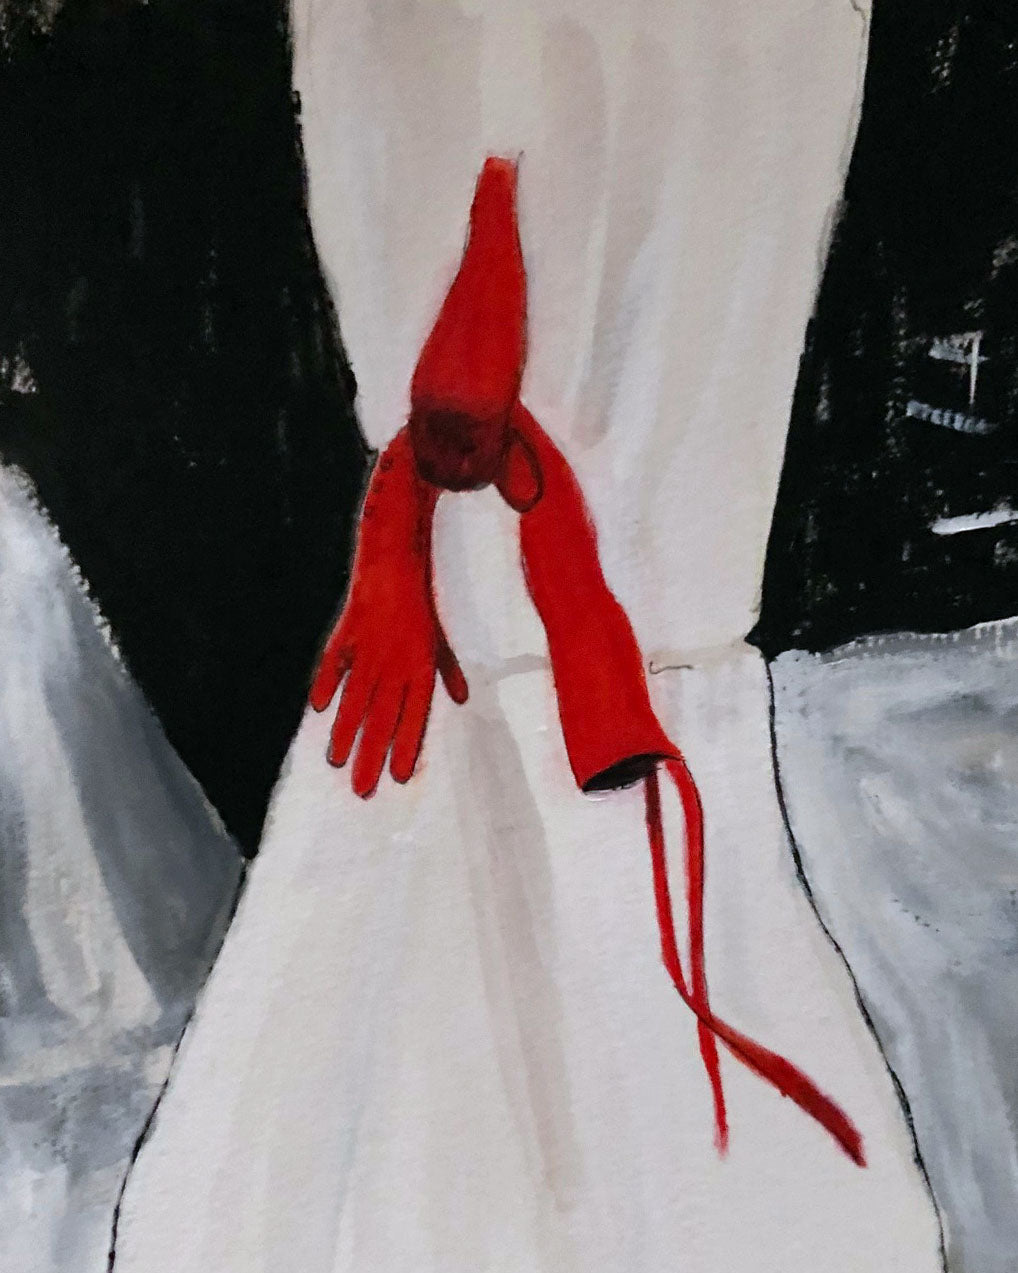 JEAN PAUL GAULTIER x Simone Rocha - SS '24 Haute Couture red glove illustration - Paris